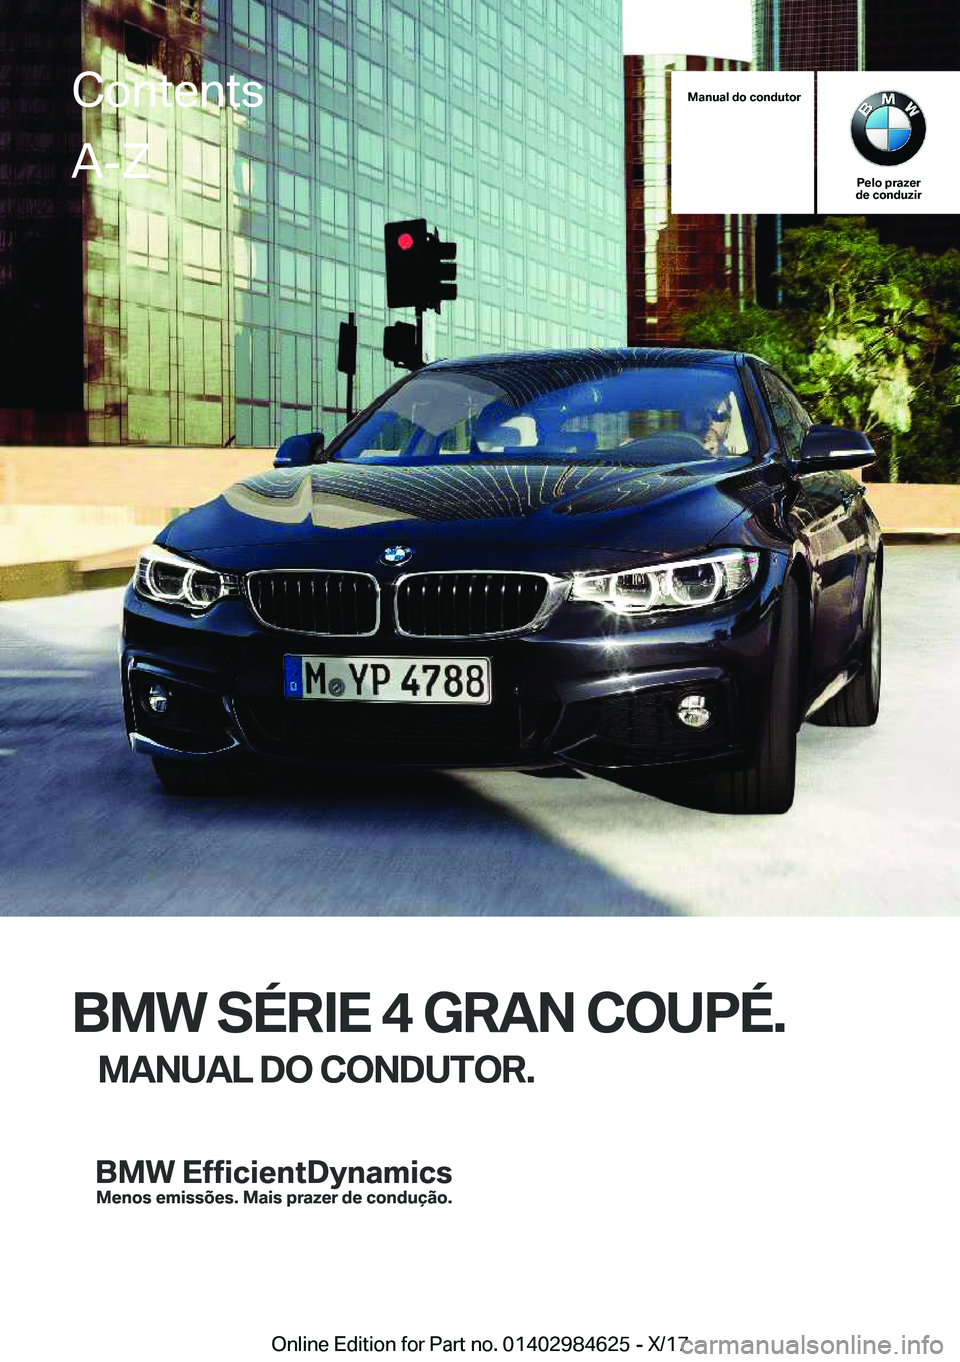 BMW 4 SERIES GRAN COUPE 2018  Manual do condutor (in Portuguese) �M�a�n�u�a�l��d�o��c�o�n�d�u�t�o�r
�P�e�l�o��p�r�a�z�e�r
�d�e��c�o�n�d�u�z�i�r
�B�M�W��S�